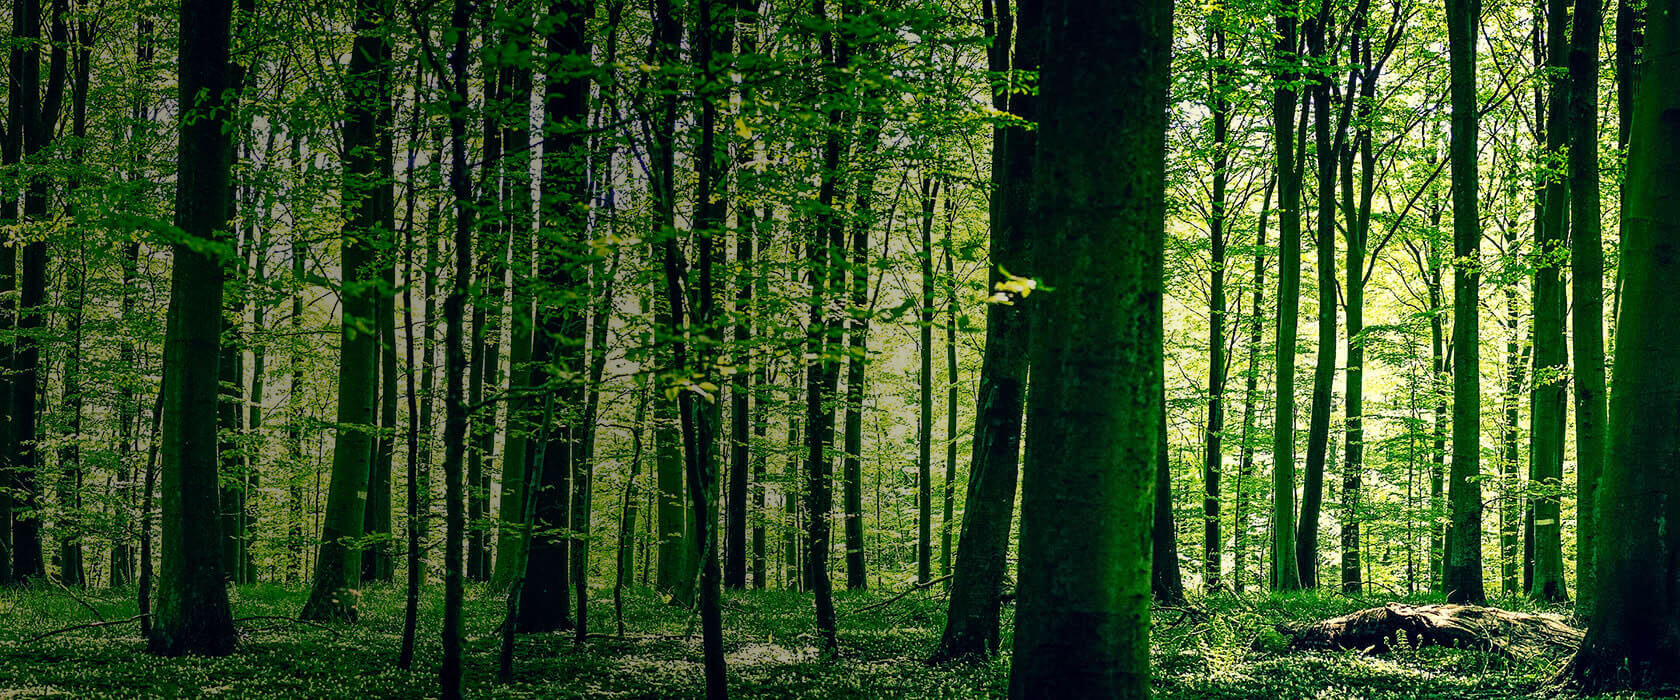 Dichter, grüner Wald